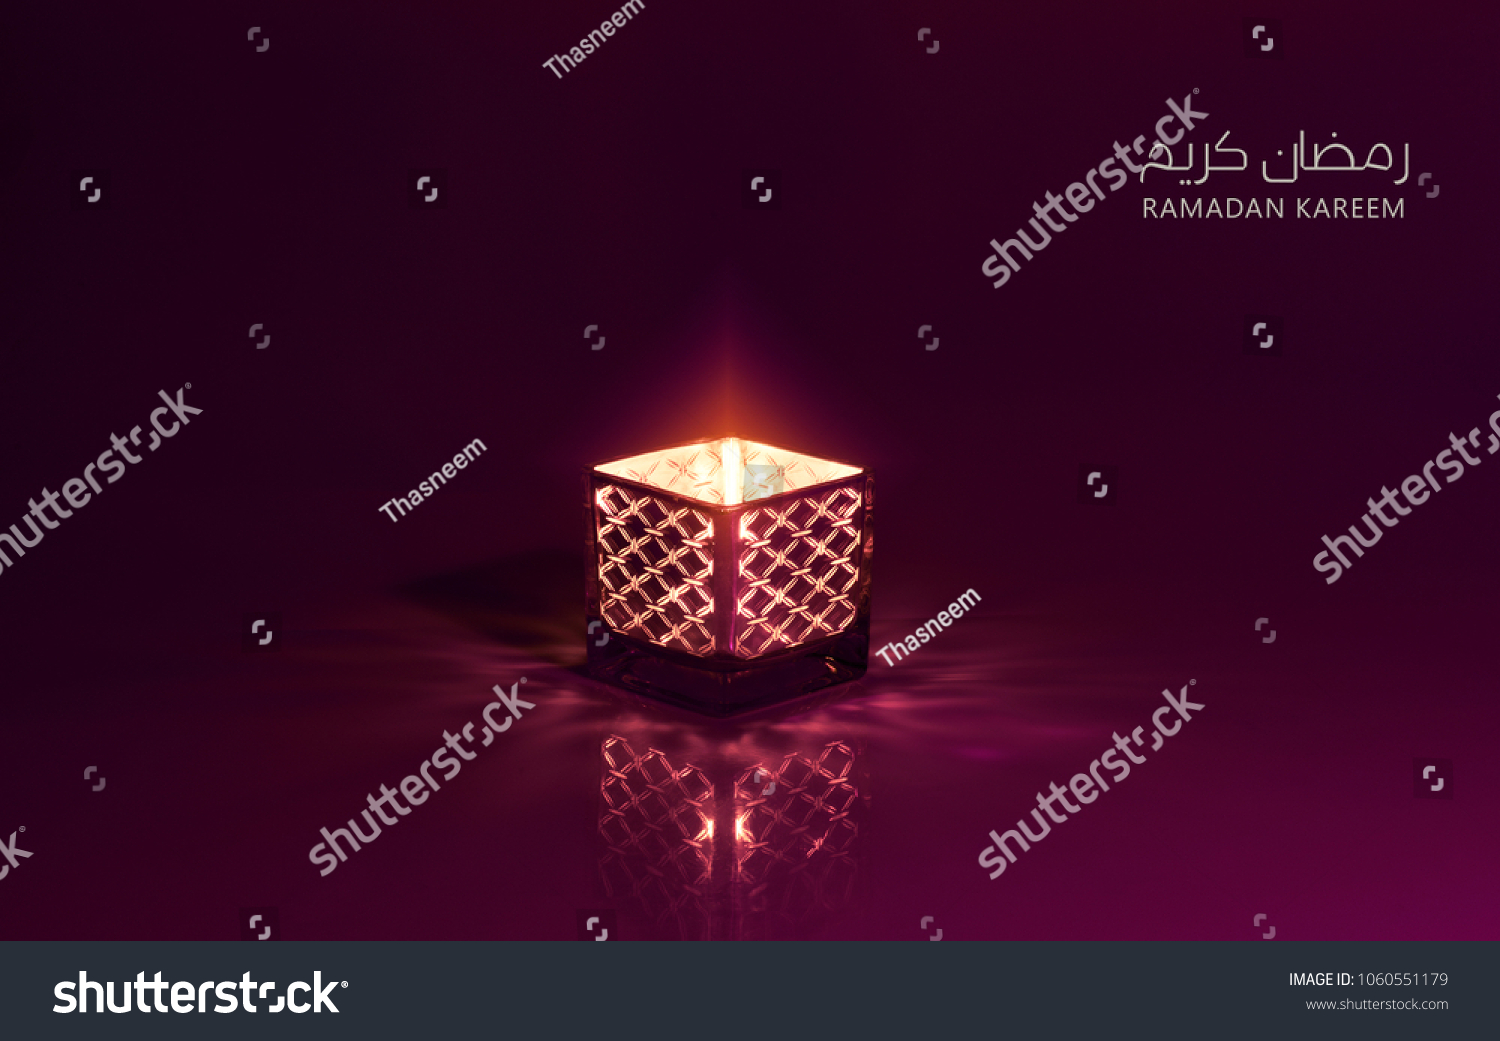 Ramadan Kareem meaning Blessed ramadan with lantern lit #1060551179